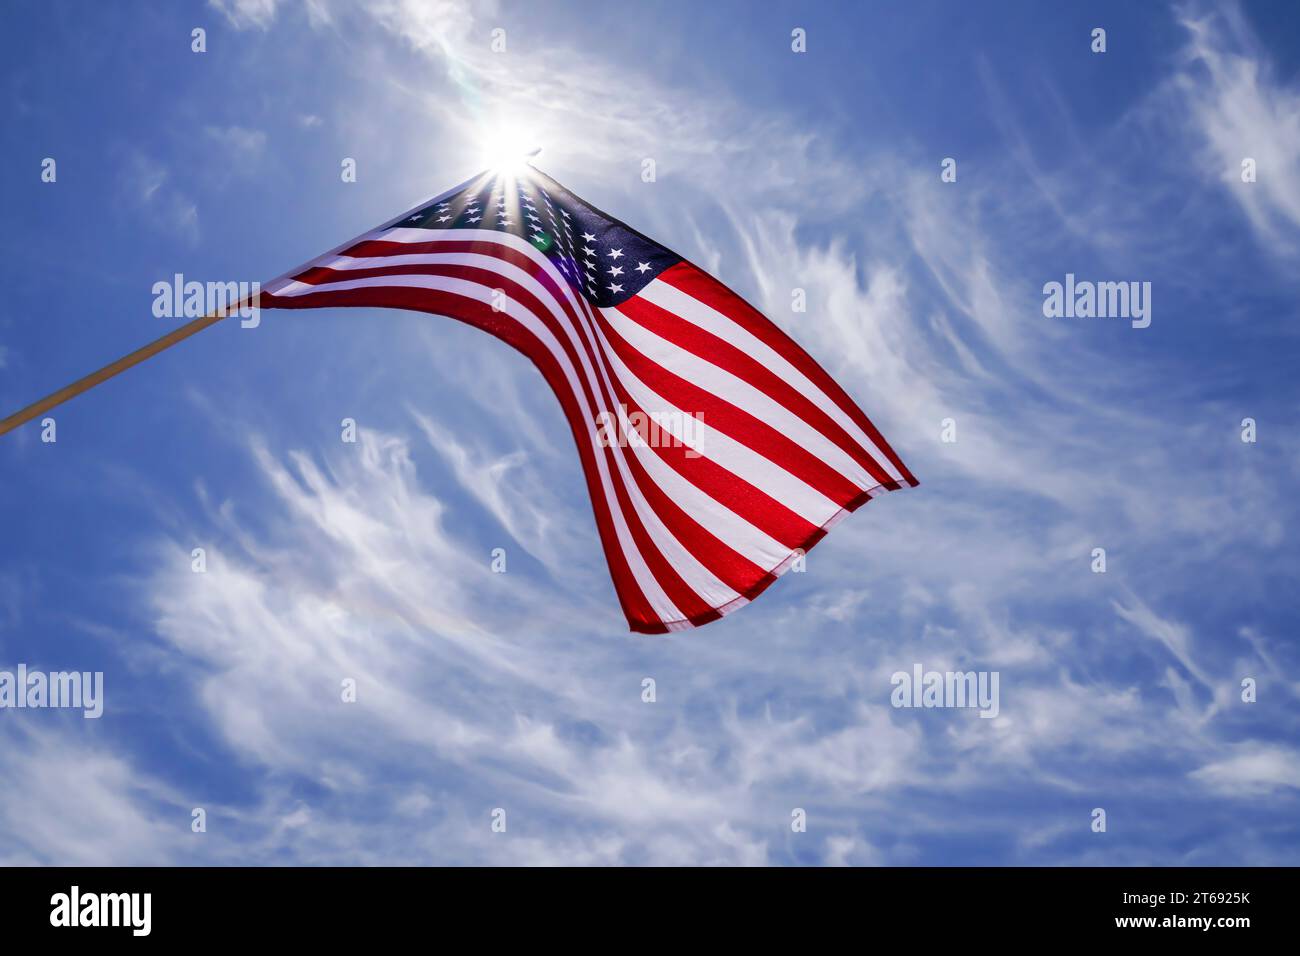 Die amerikanische Flagge winkt in einem blauen Himmel mit einer Sternenbewegung hinter der Flagge der USA. Der rote, weiße und blaue Stern stieß die US-Flagge hoch. Stockfoto